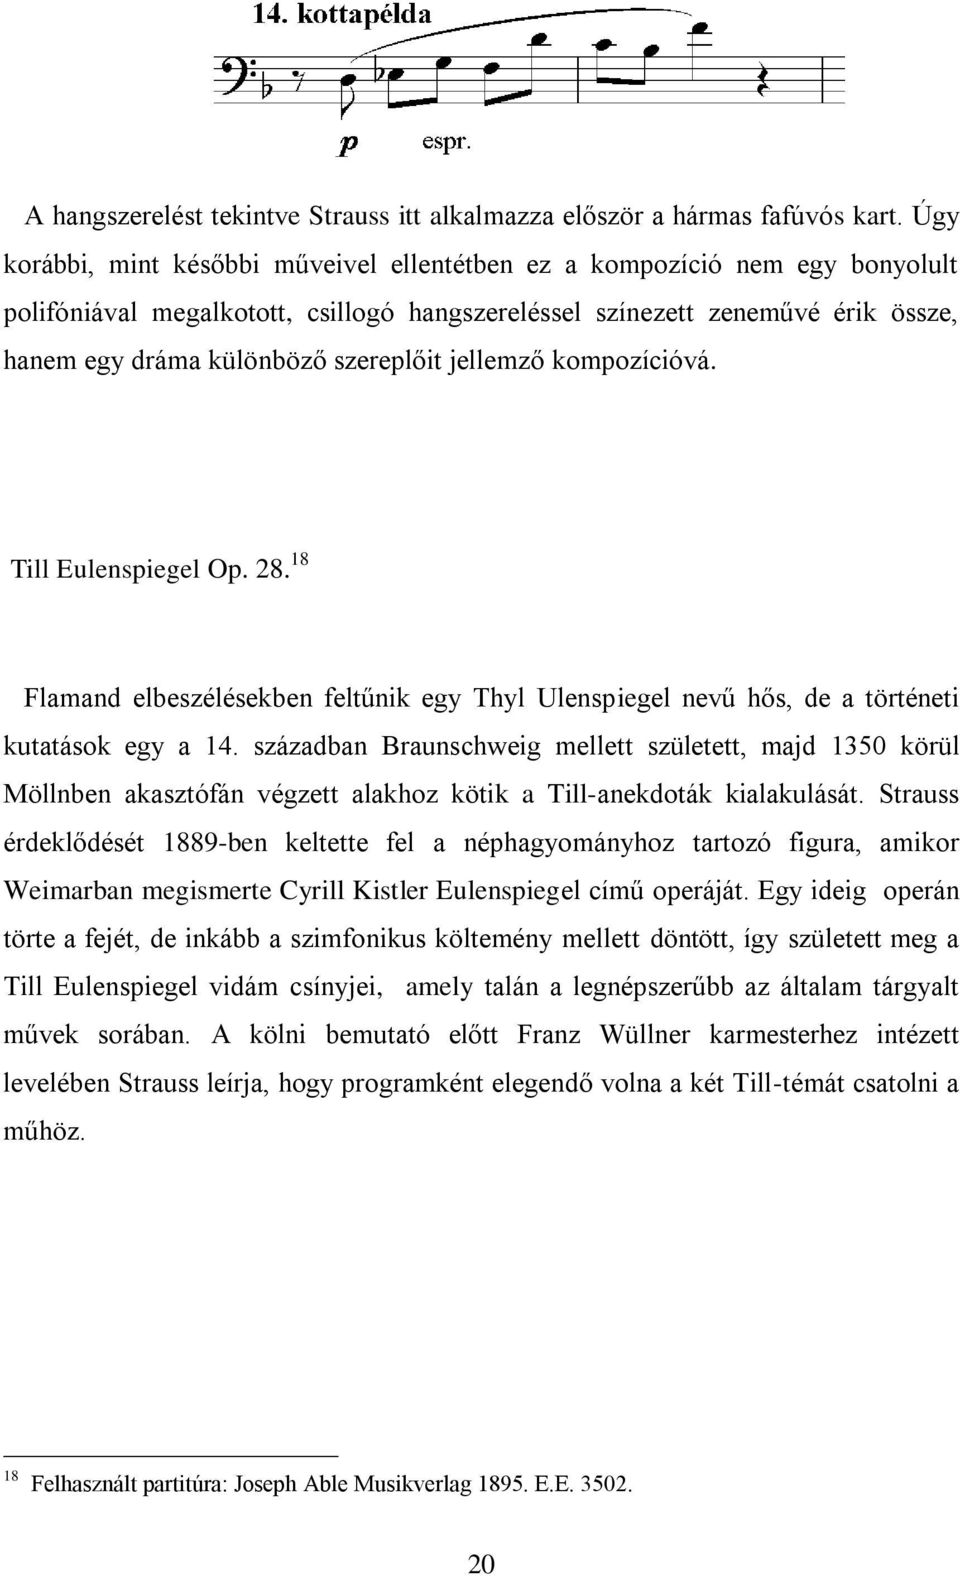 jellemző kompozícióvá. Till Eulenspiegel Op. 28. 18 Flamand elbeszélésekben feltűnik egy Thyl Ulenspiegel nevű hős, de a történeti kutatások egy a 14.